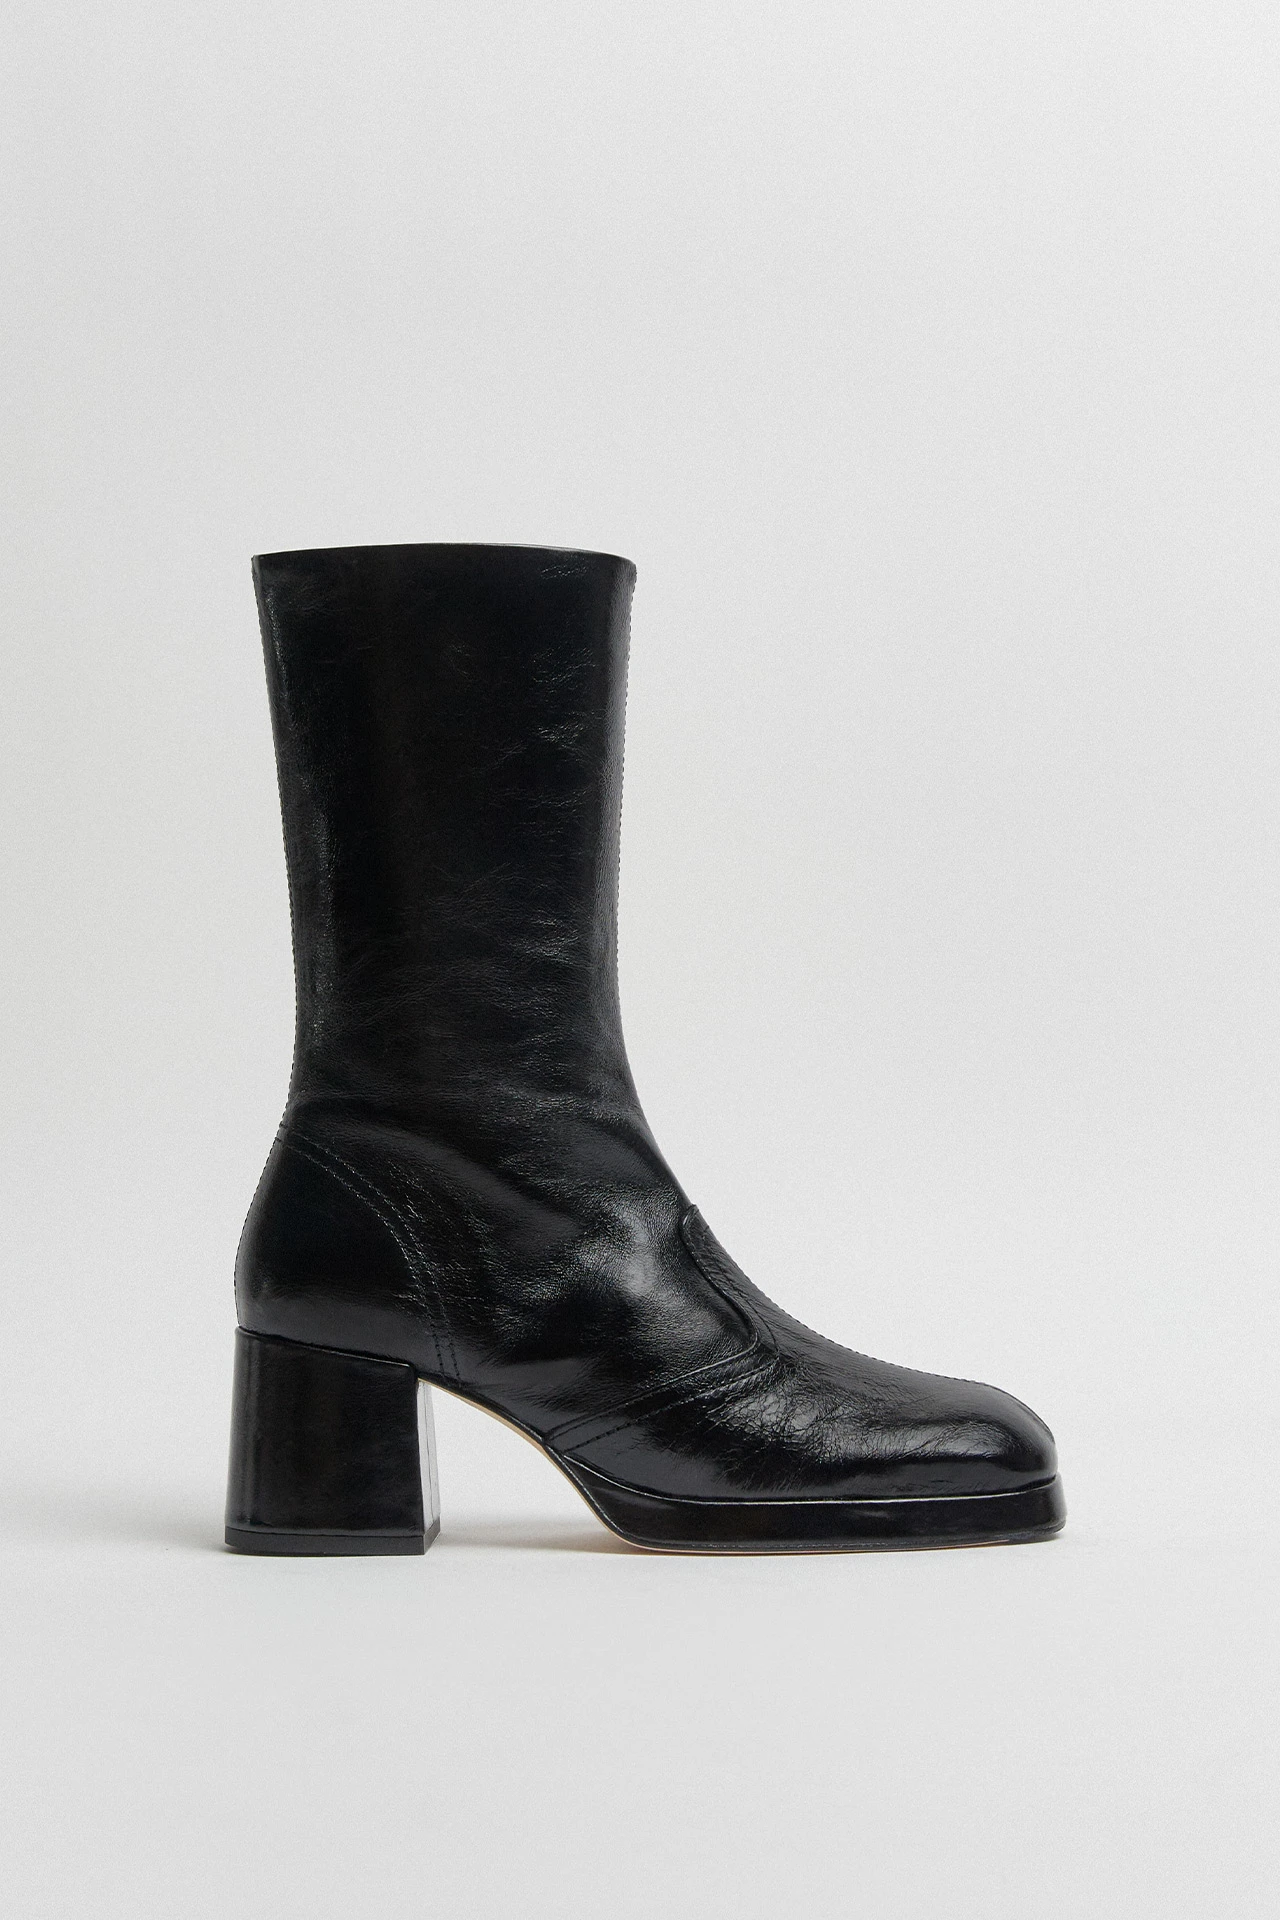 Miista-cass-black-crinkle-boots-01